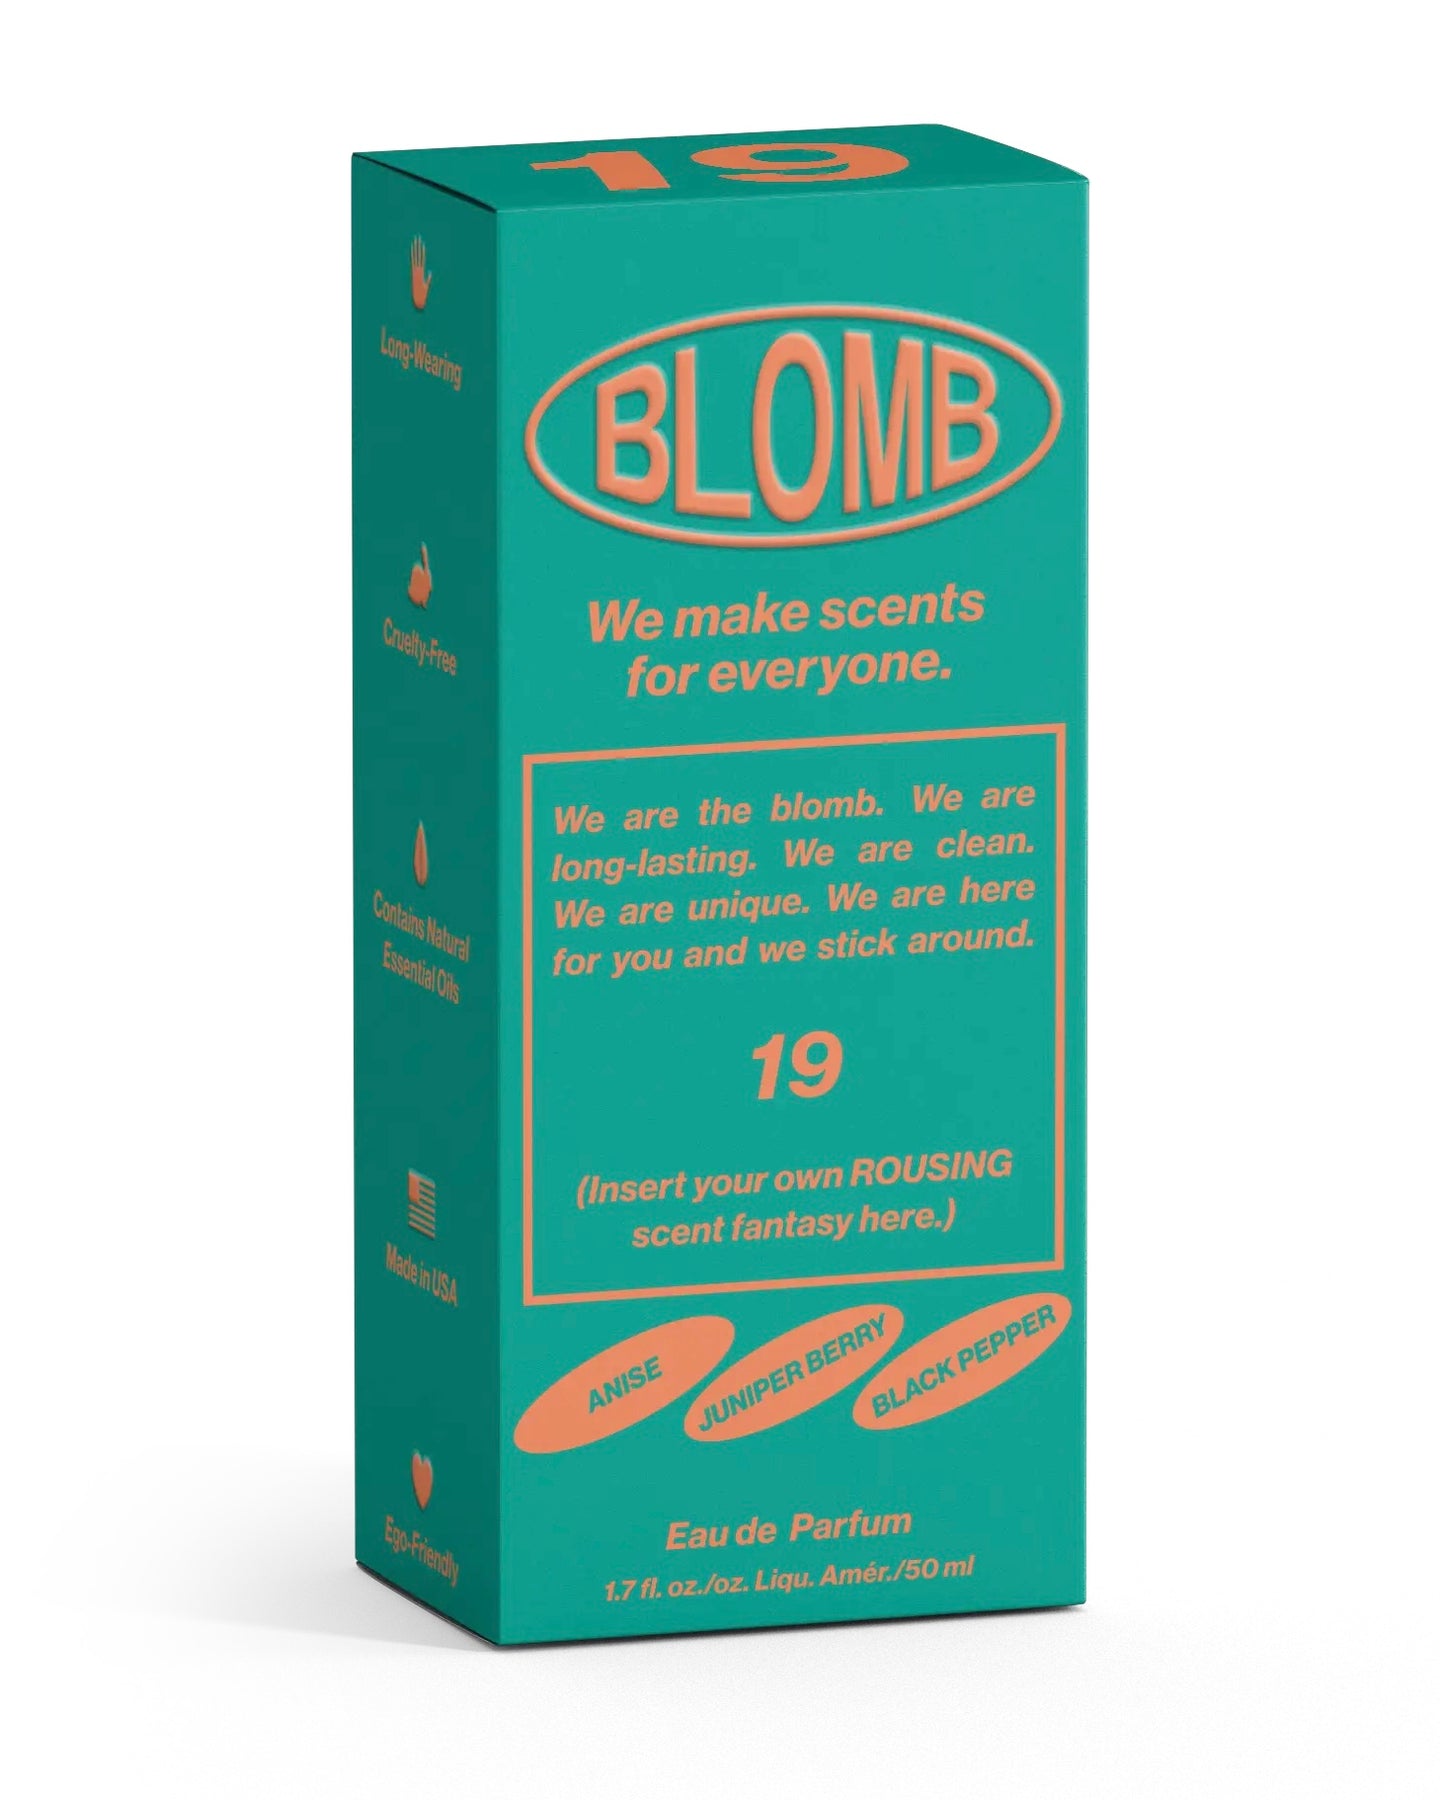 the Blomb No. 19 Eau de Parfum box on a white backgorund